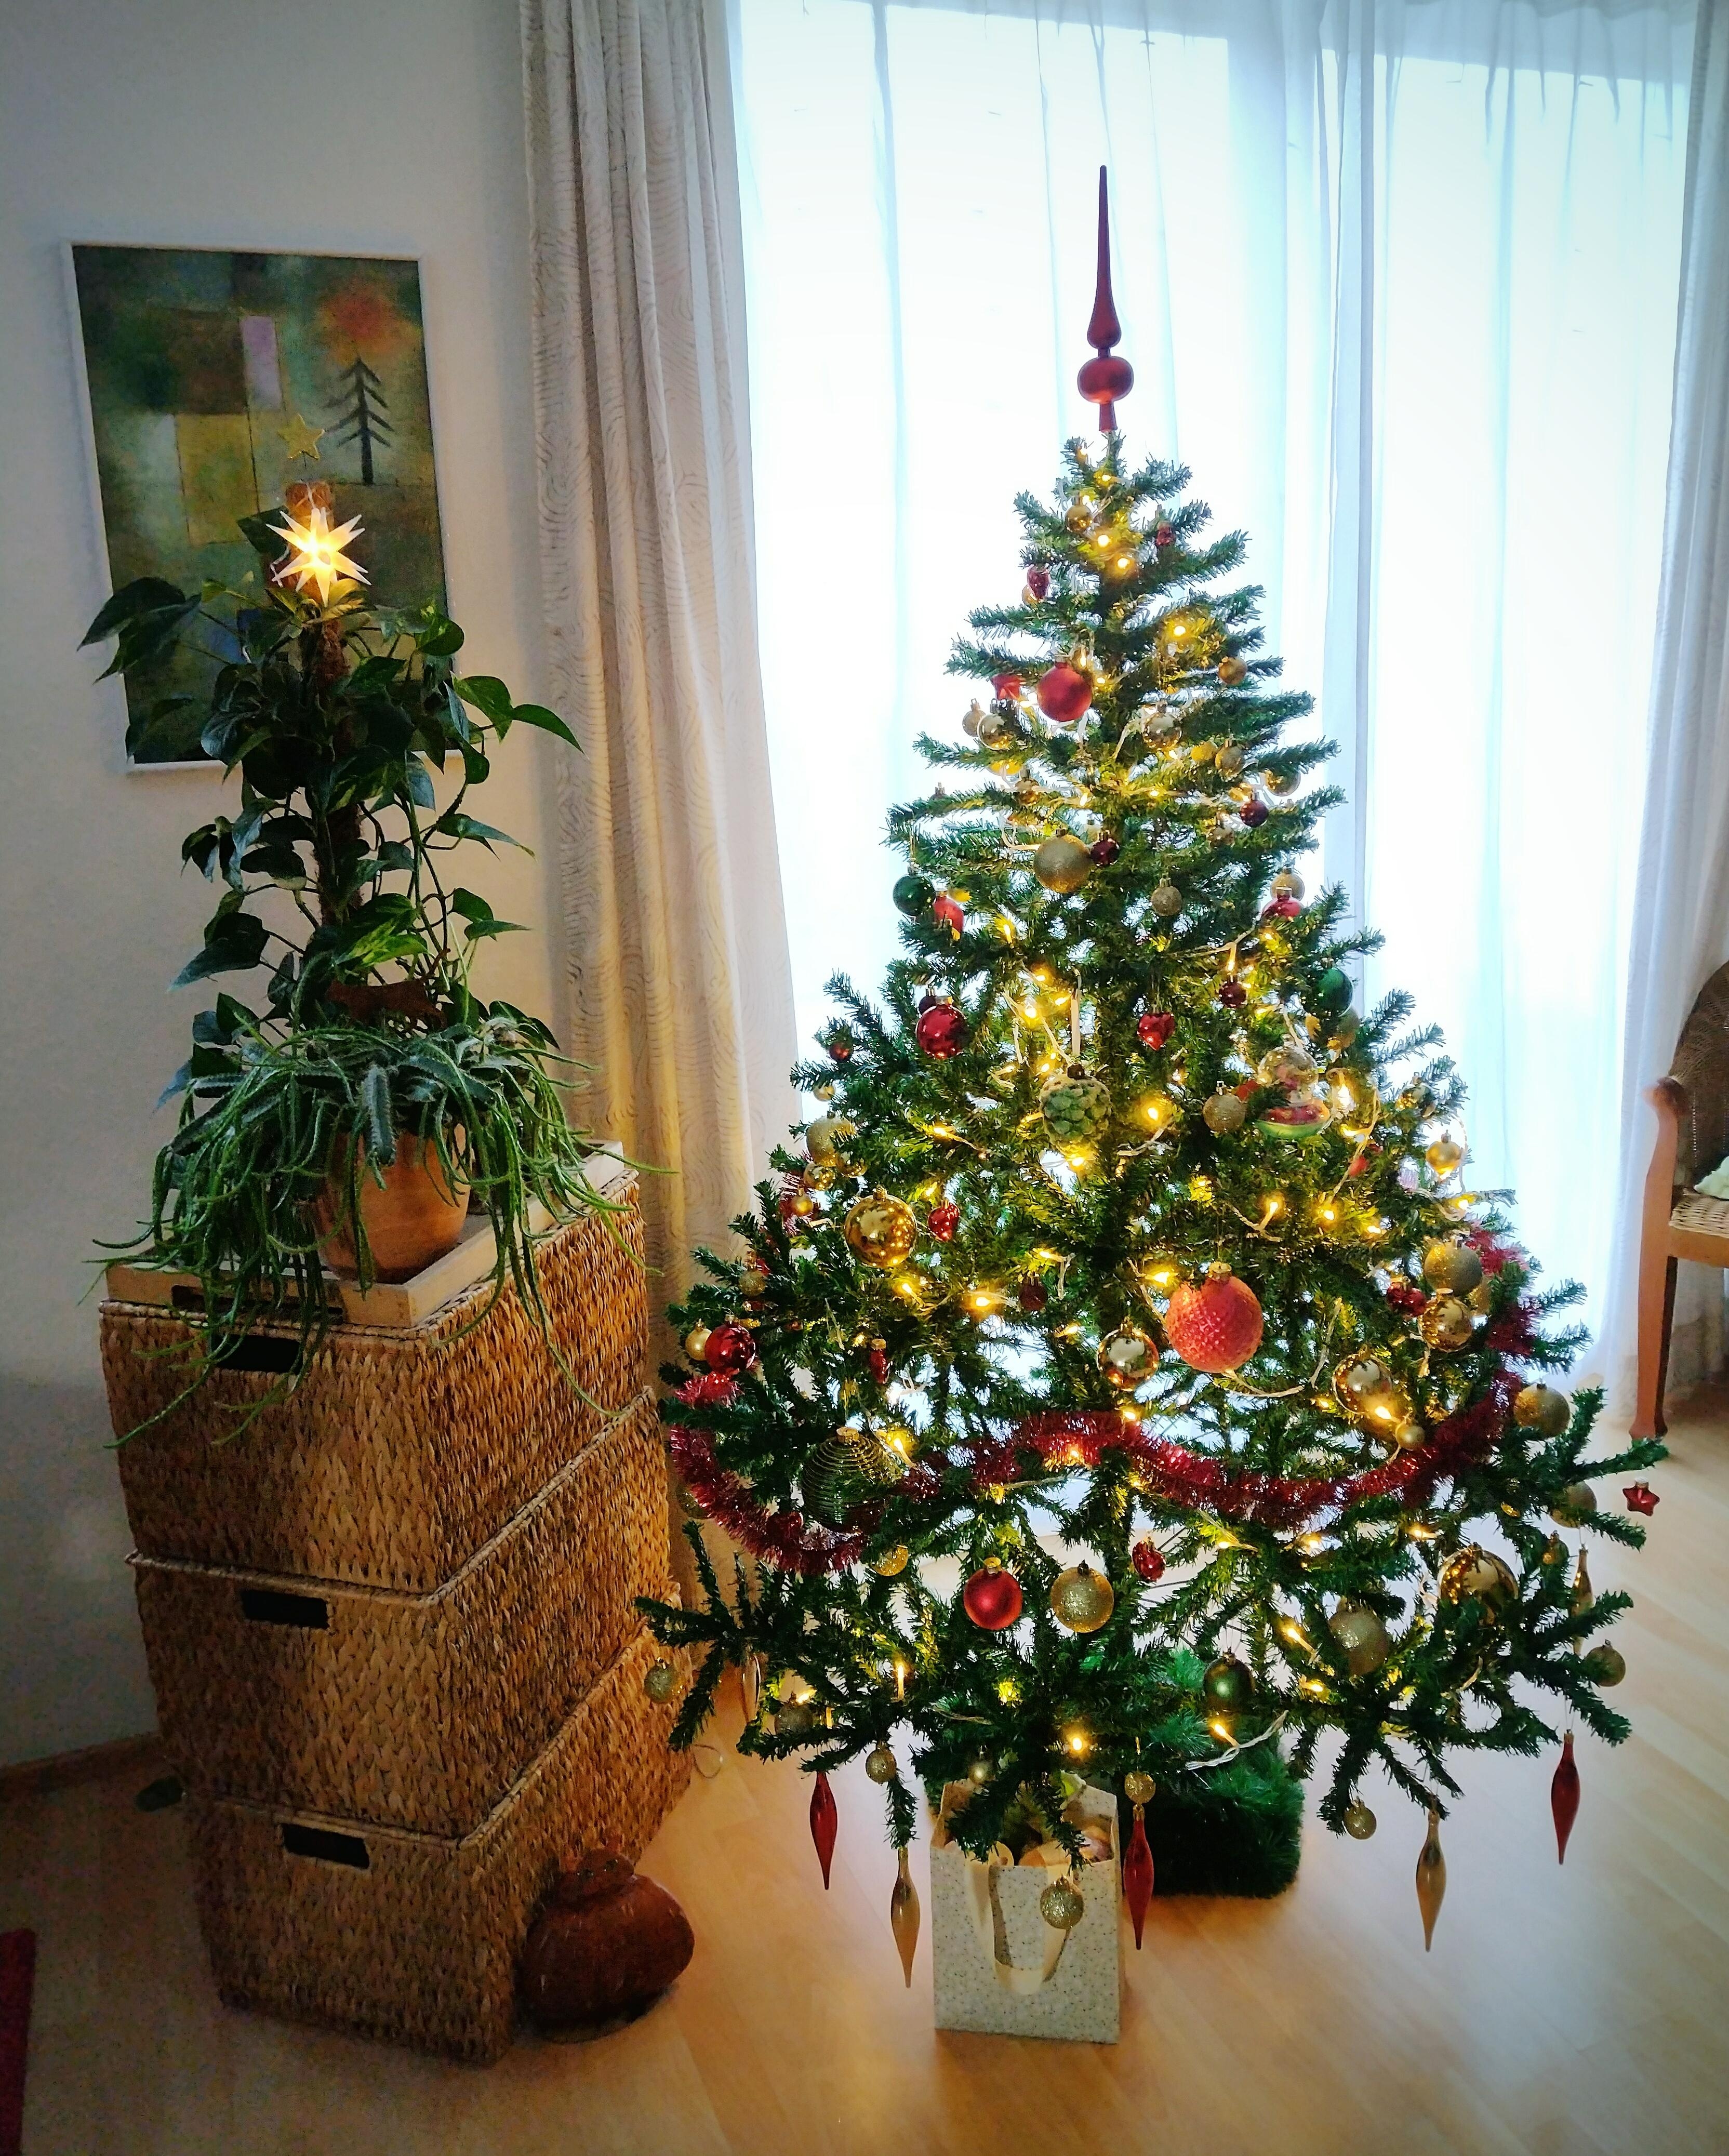 ❄️ Frohe Weihnachten ❄️
#weihnachtsbaum #lichter #weihnachtlich #tannenbaum